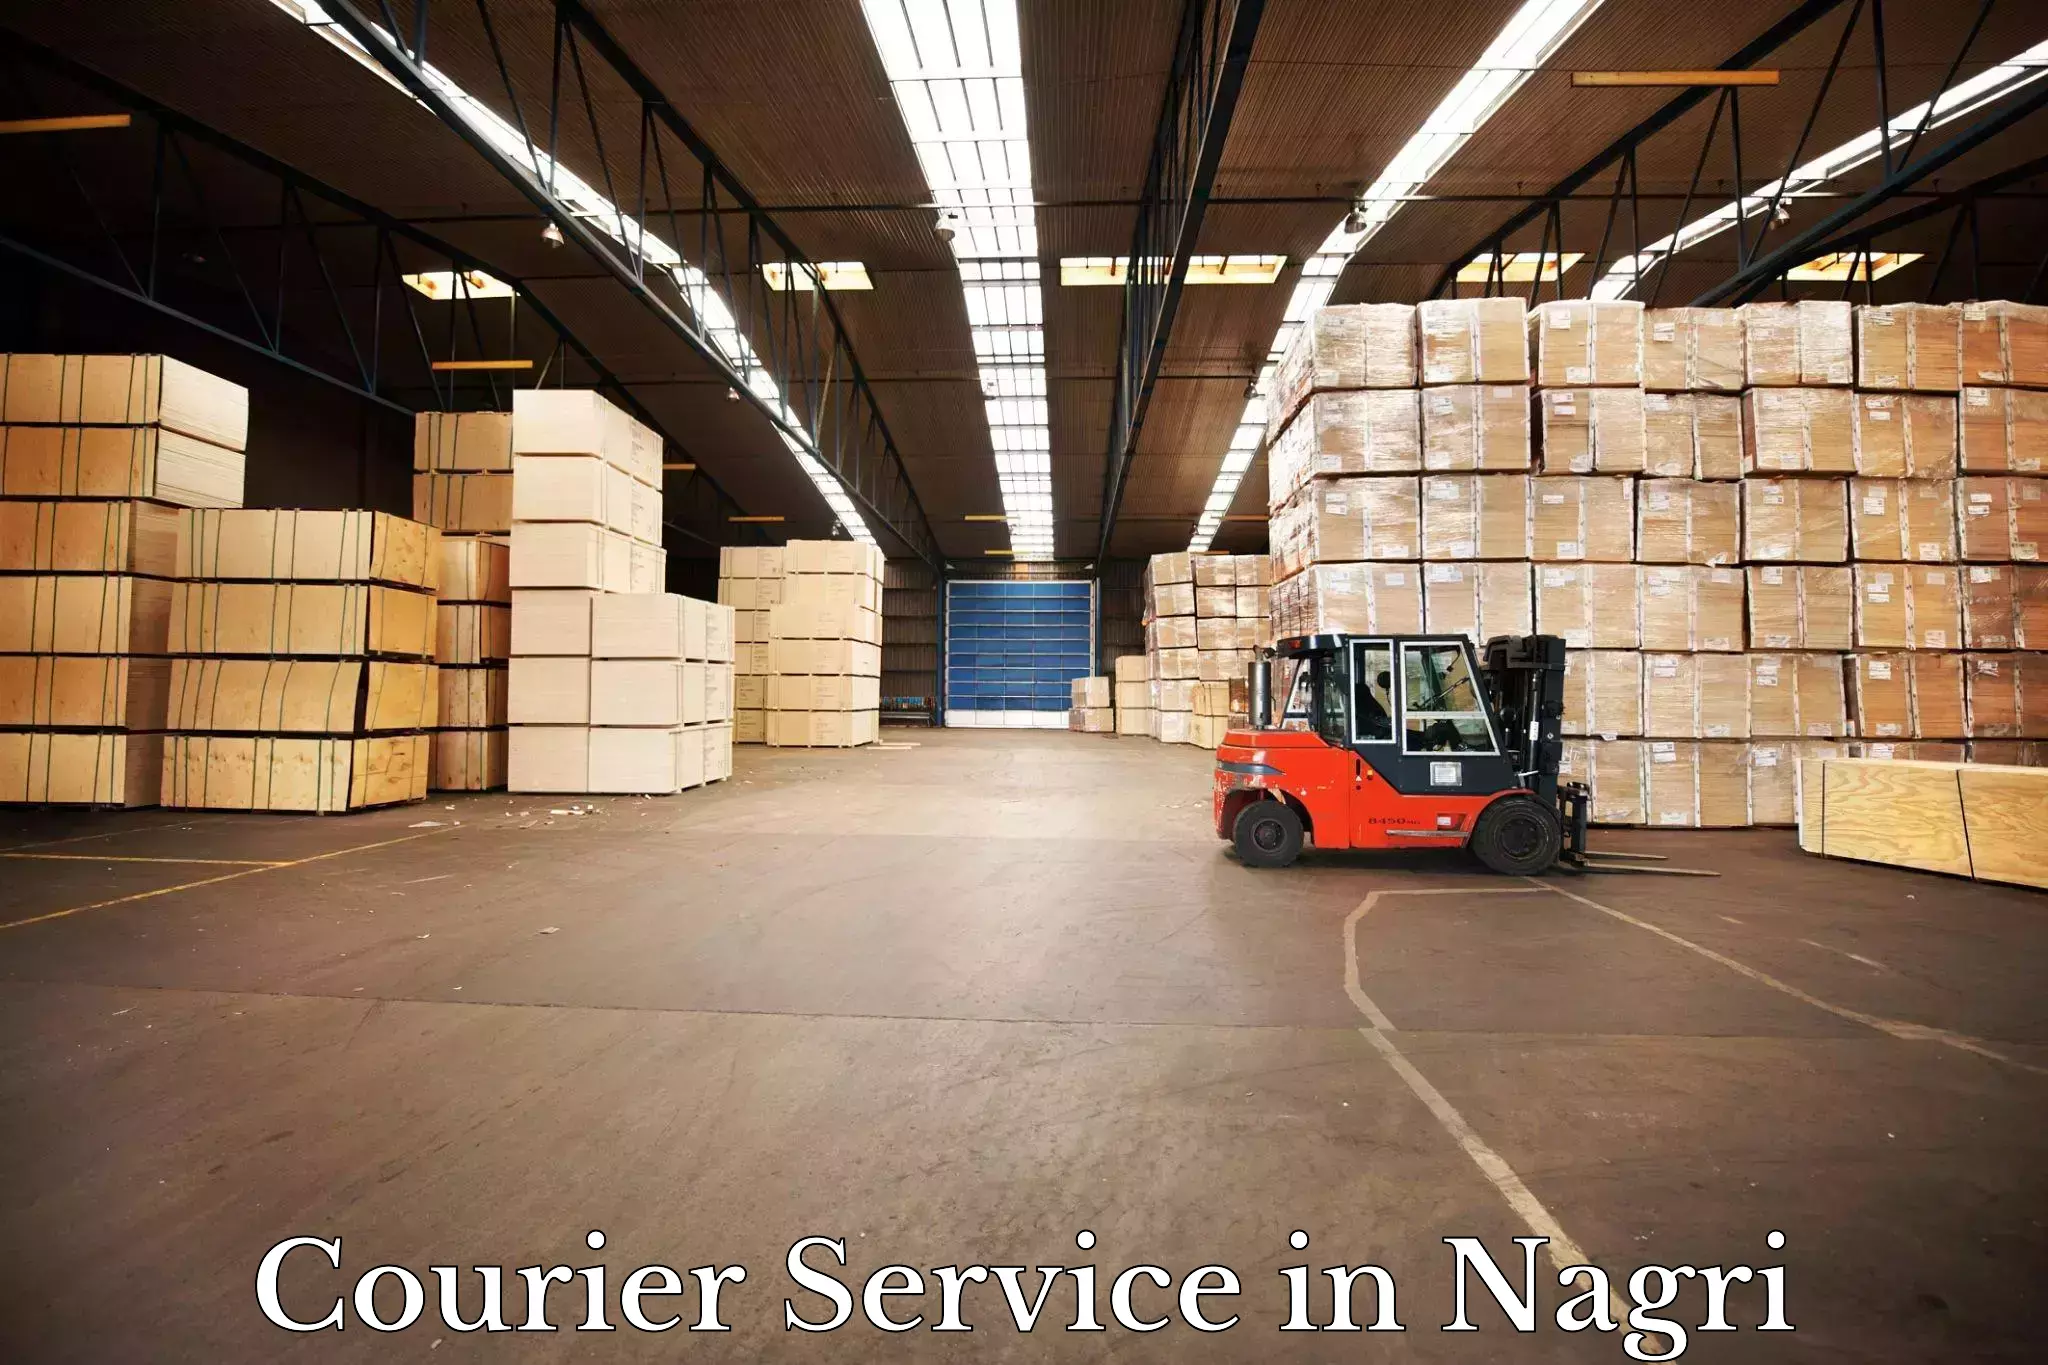 Premium courier services in Nagri